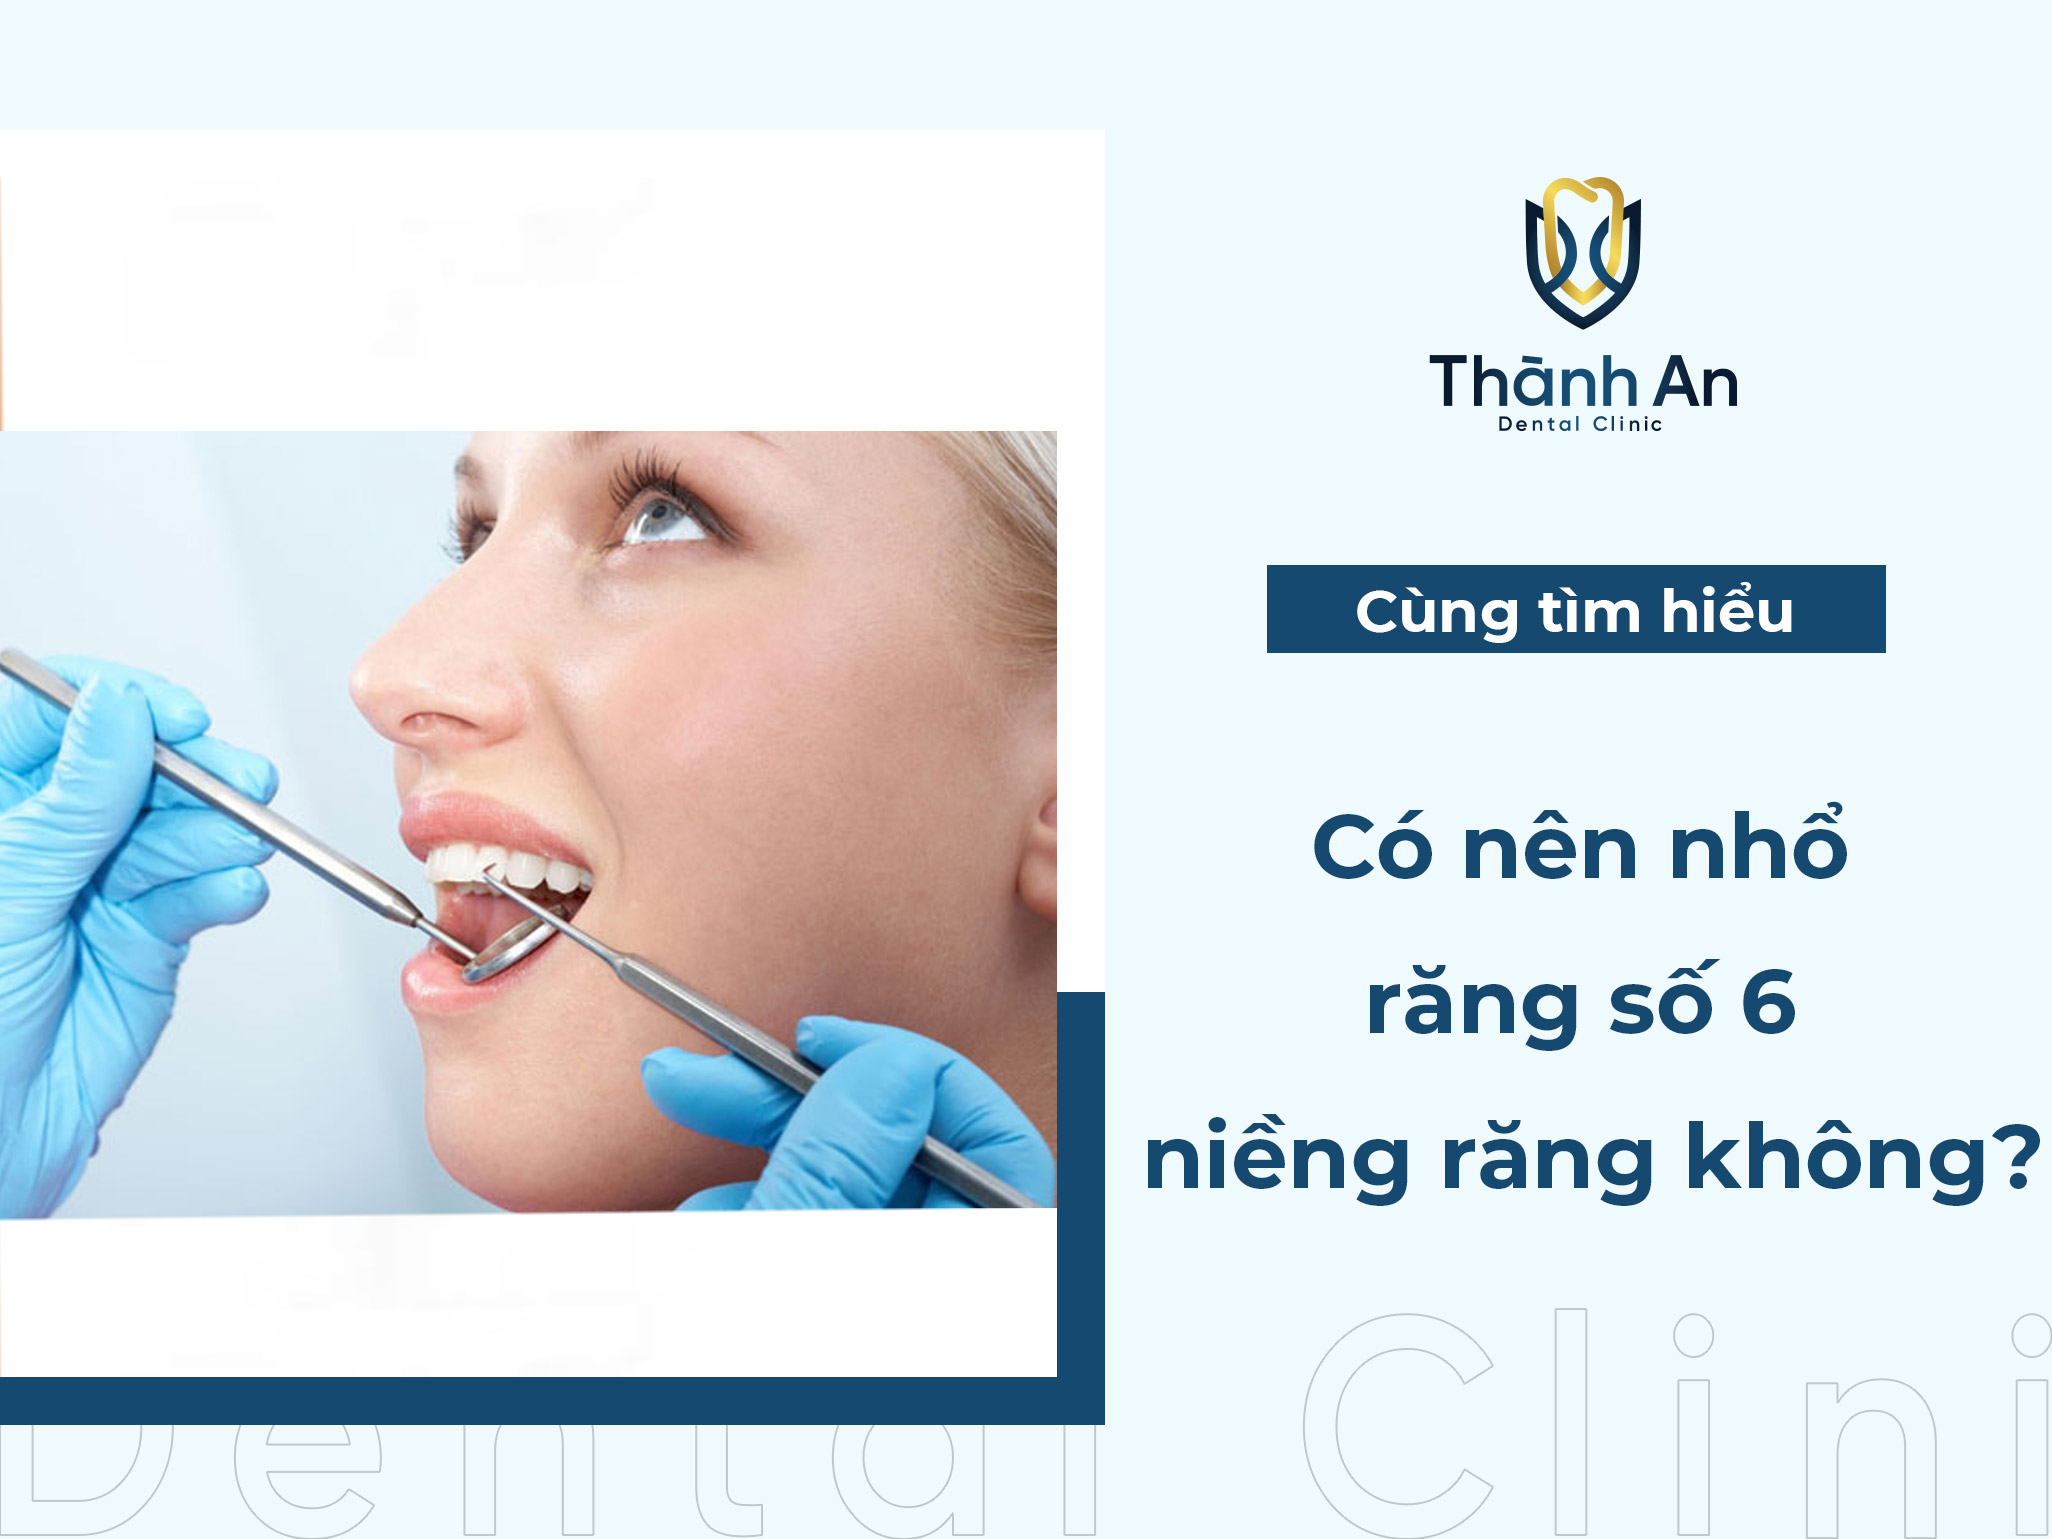 Răng số 6 là gì? Có nên nhổ răng số 6 để niềng răng không?